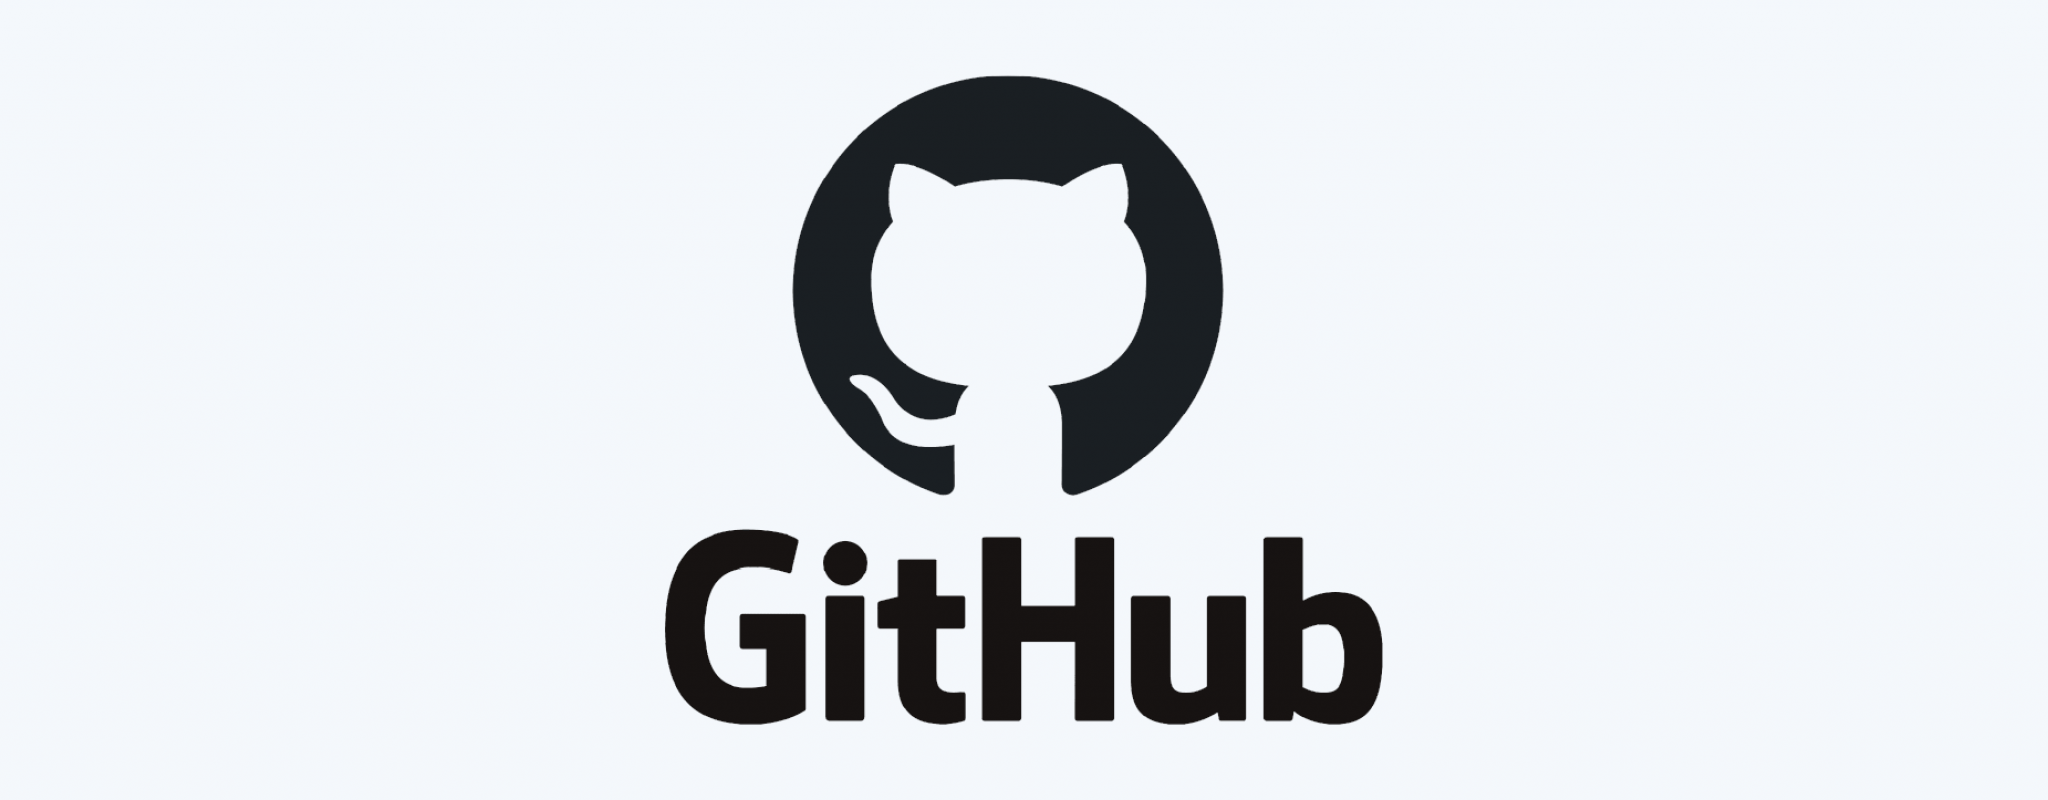 Obrazek przedstawia logo serwisu GitHub.